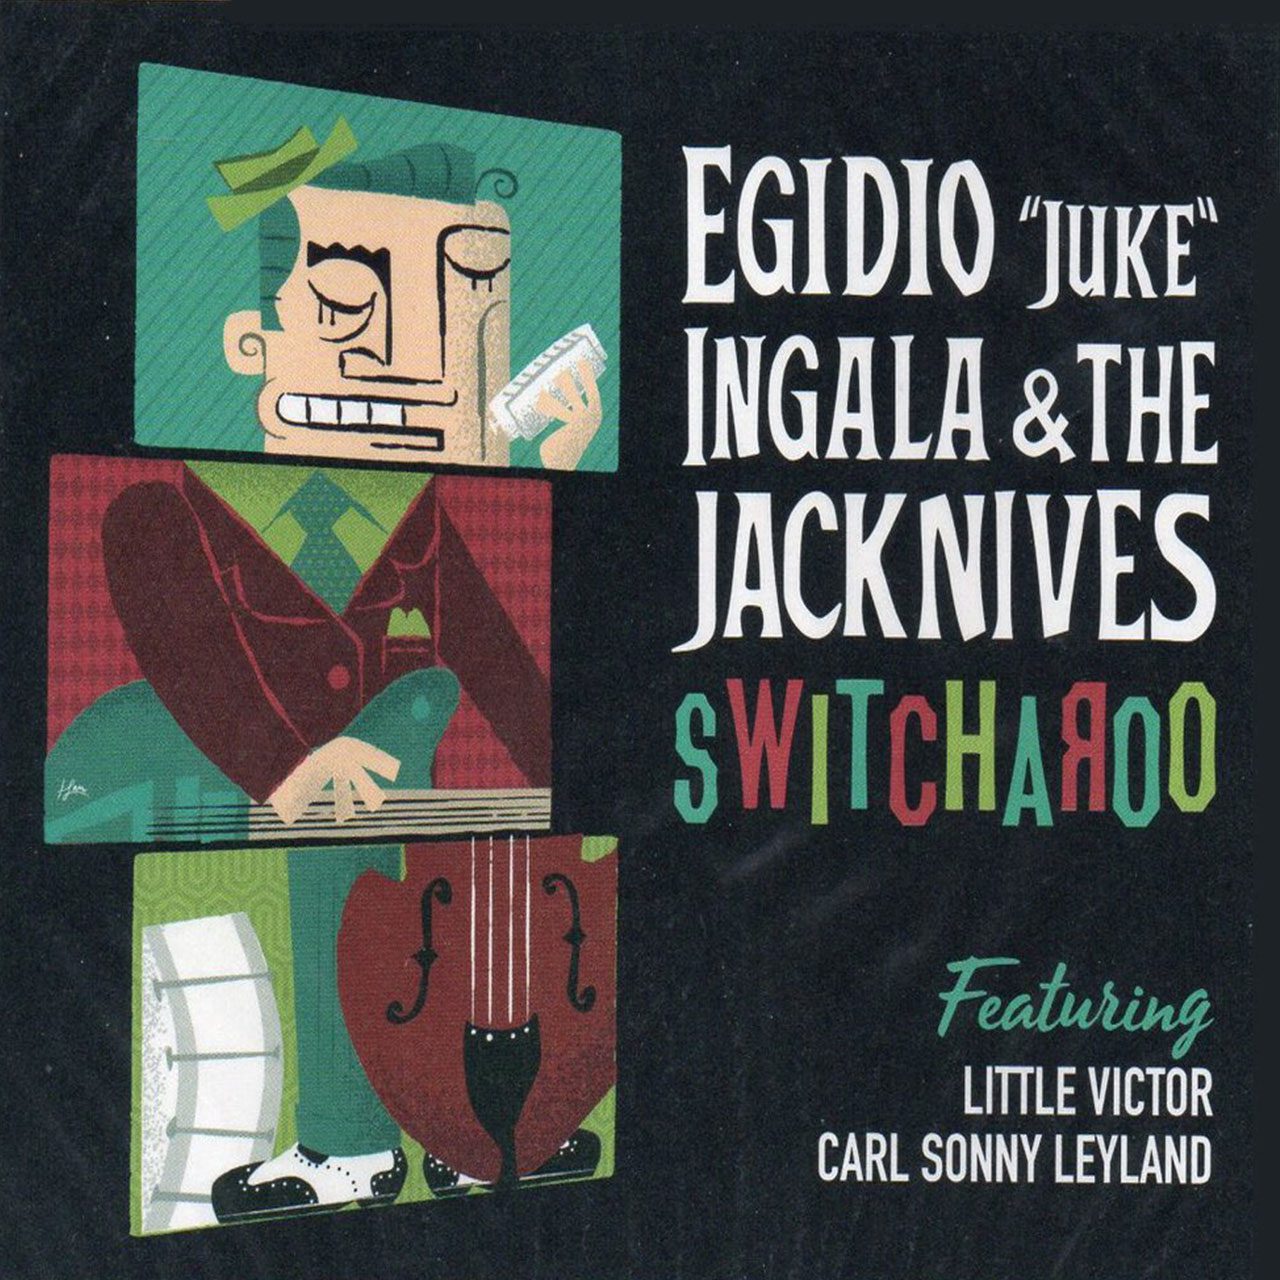 Egidio-‘Juke’-Ingala-&-The-Jackives---“Switcharoo” cover album